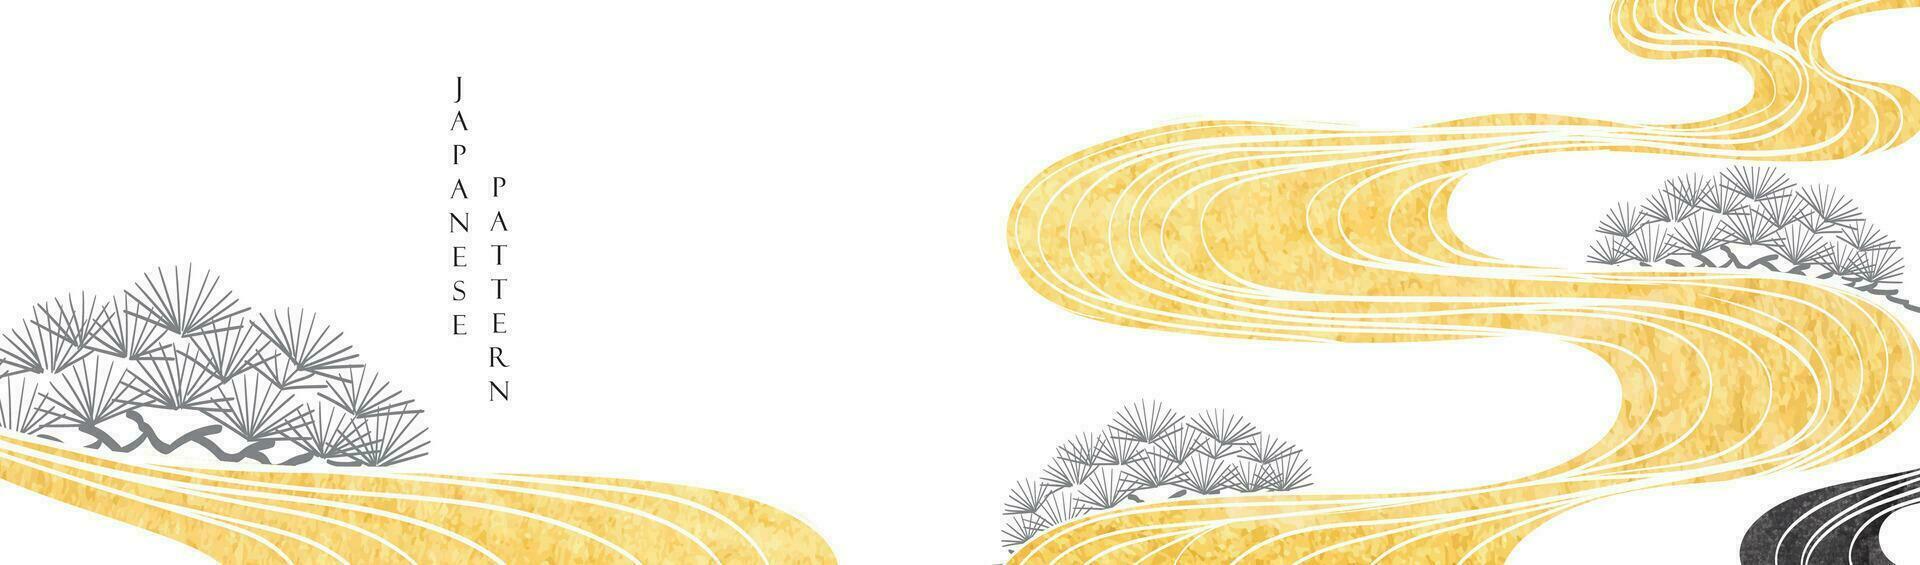 japansk bakgrund med guld och svart textur målning textur. orientalisk naturlig Vinka mönster med hav hav och bonsai träd dekoration baner design i årgång stil vektor